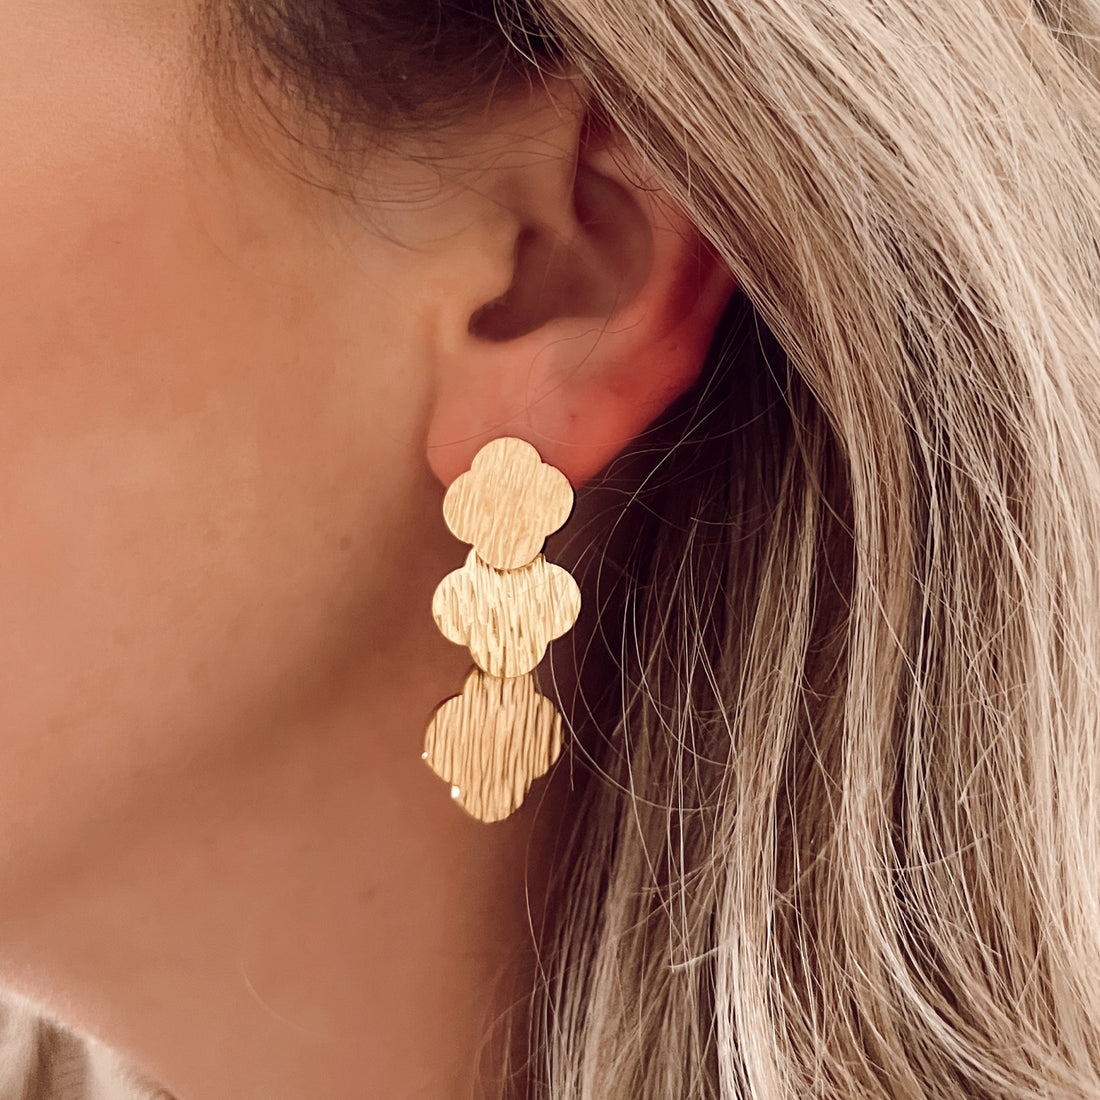 Lange gouden oorbellen met klavertjes vier er aan. De oorbellen zijn van gold plated roestvrij staal materiaal en zijn waterproof.  Afmetingen 4 cm x 